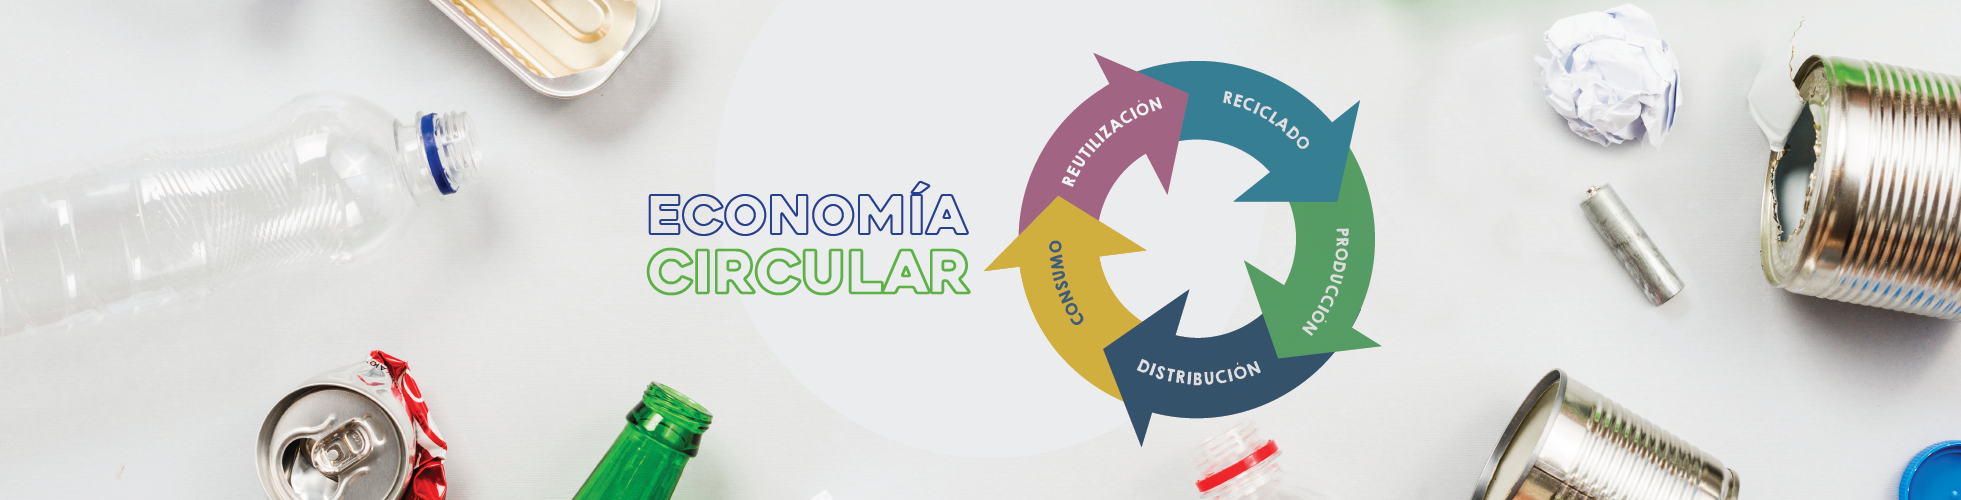 Economia-circular